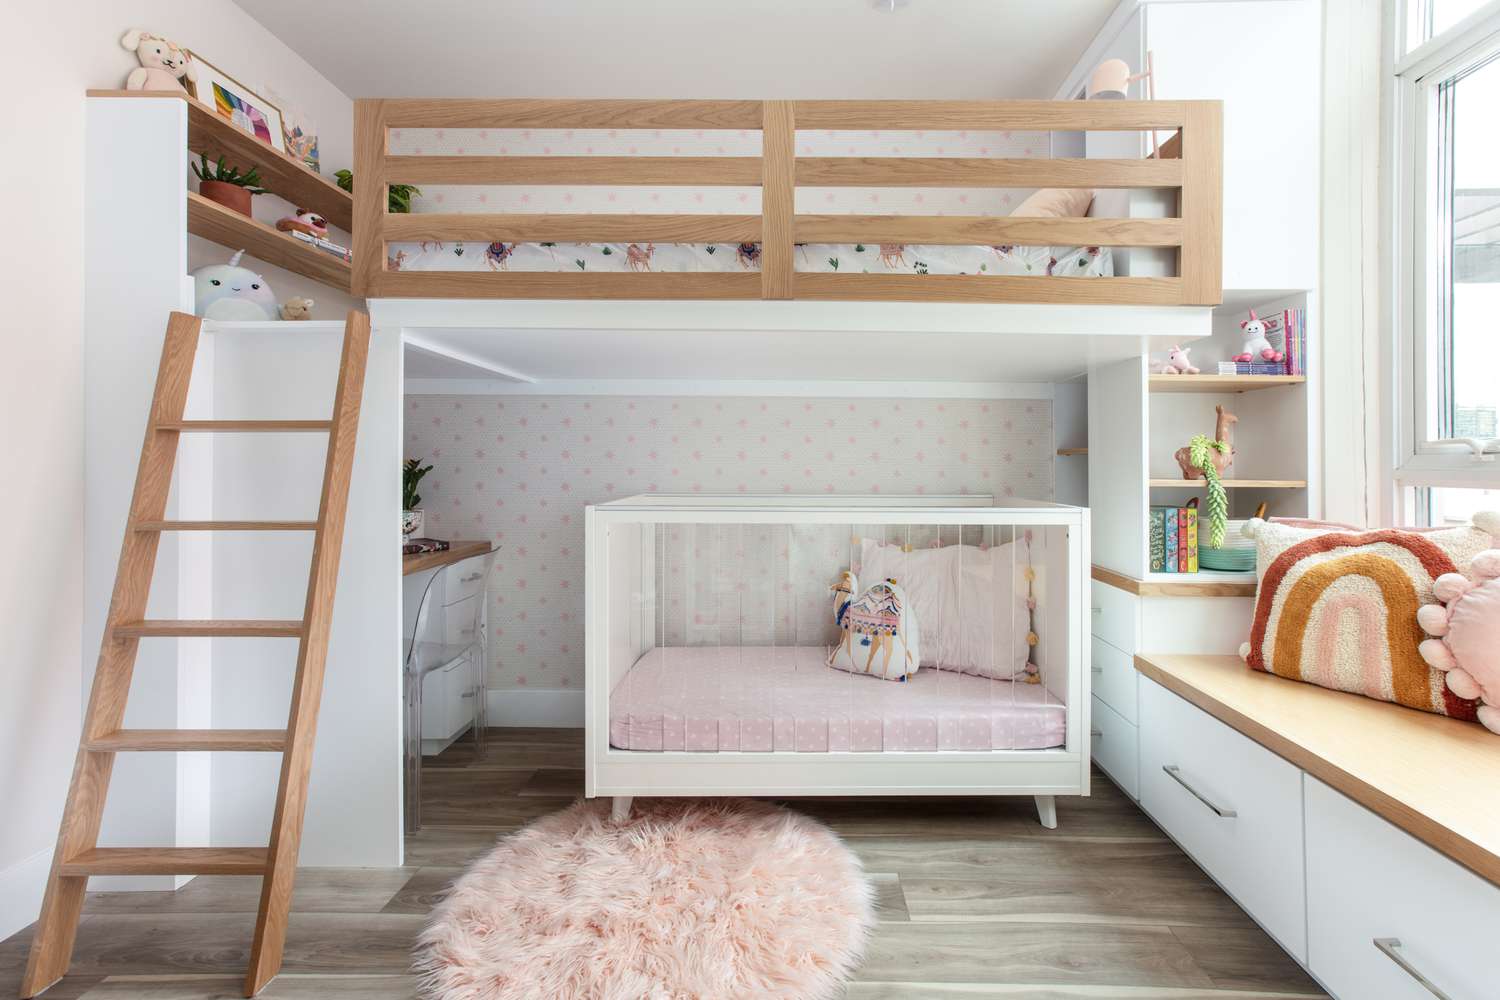 Ein Etagenbett steht über einem Kinderbett, und alle Räume sind in Pfirsich- und Weißtönen gehalten